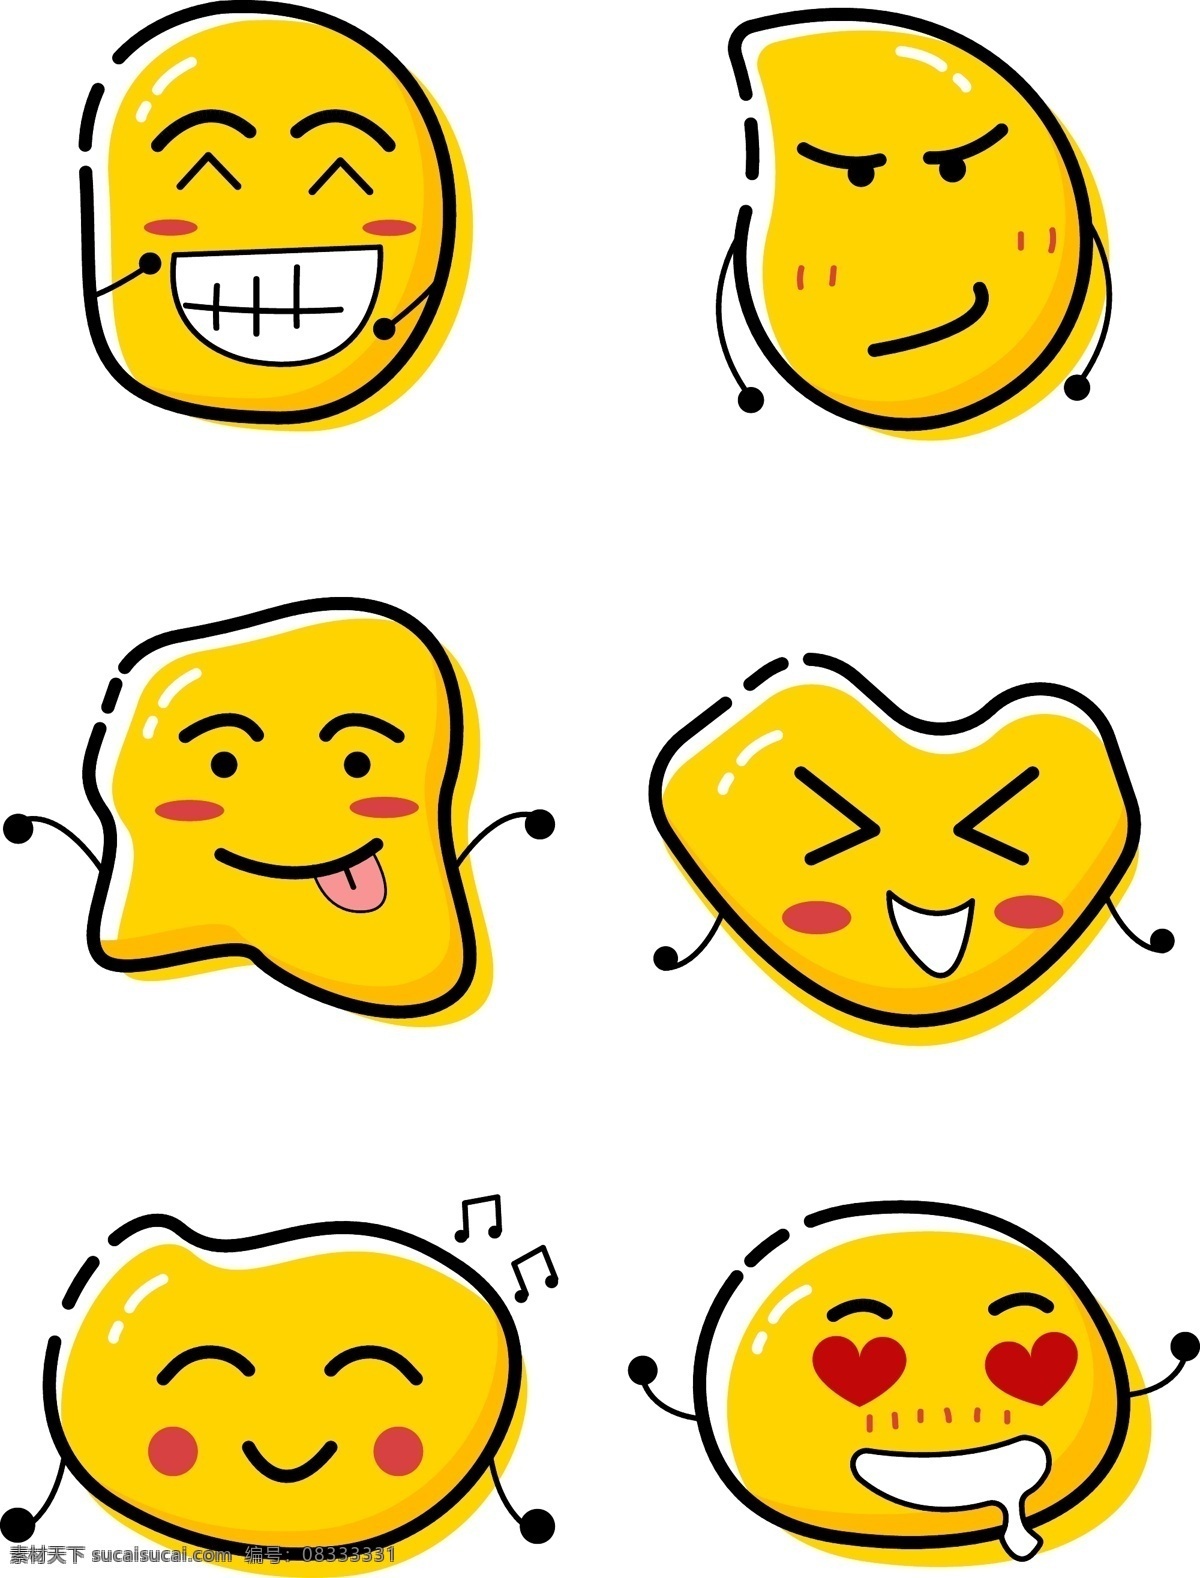 mbe 风格 emoji 创意 笑脸 卡通 矢量 元素 可爱 表情包